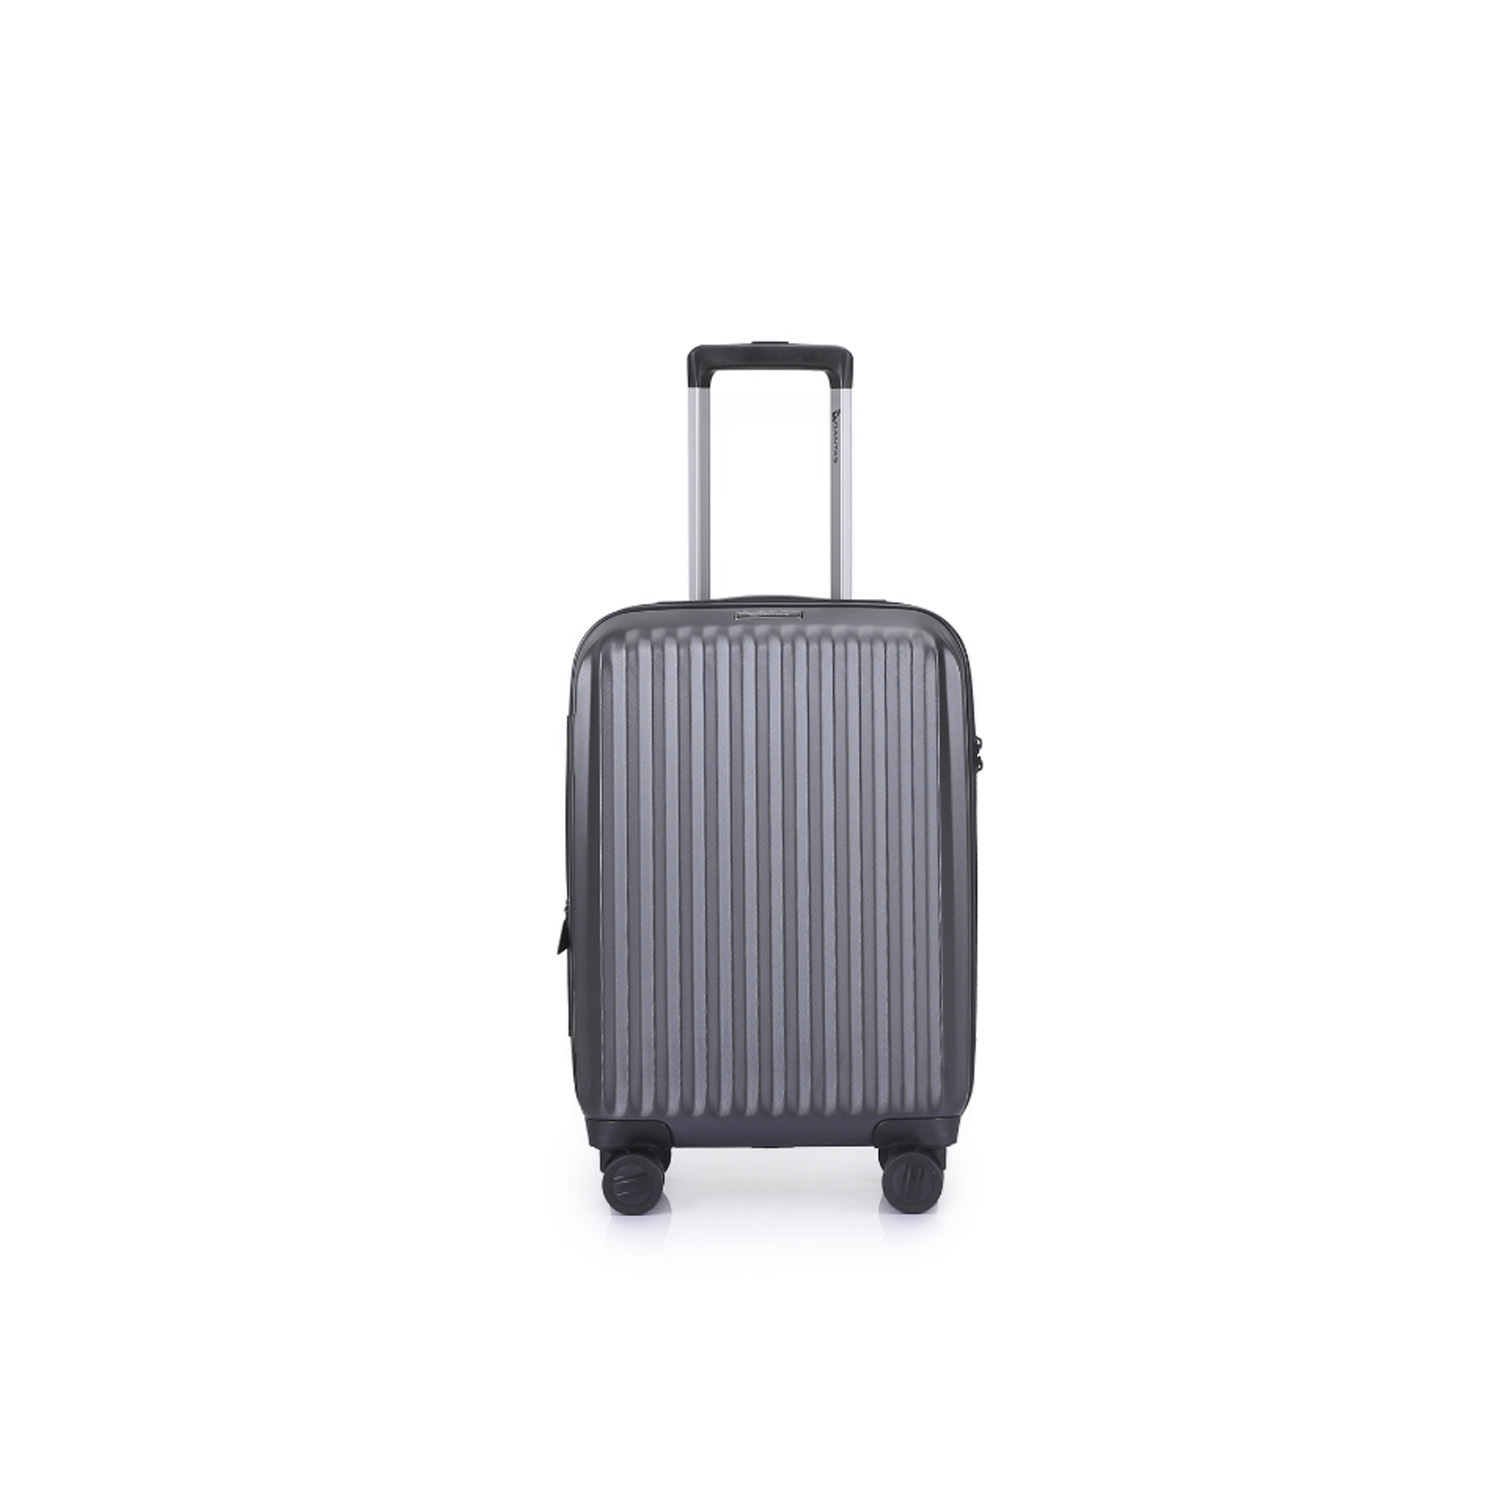 travel luggage canberra